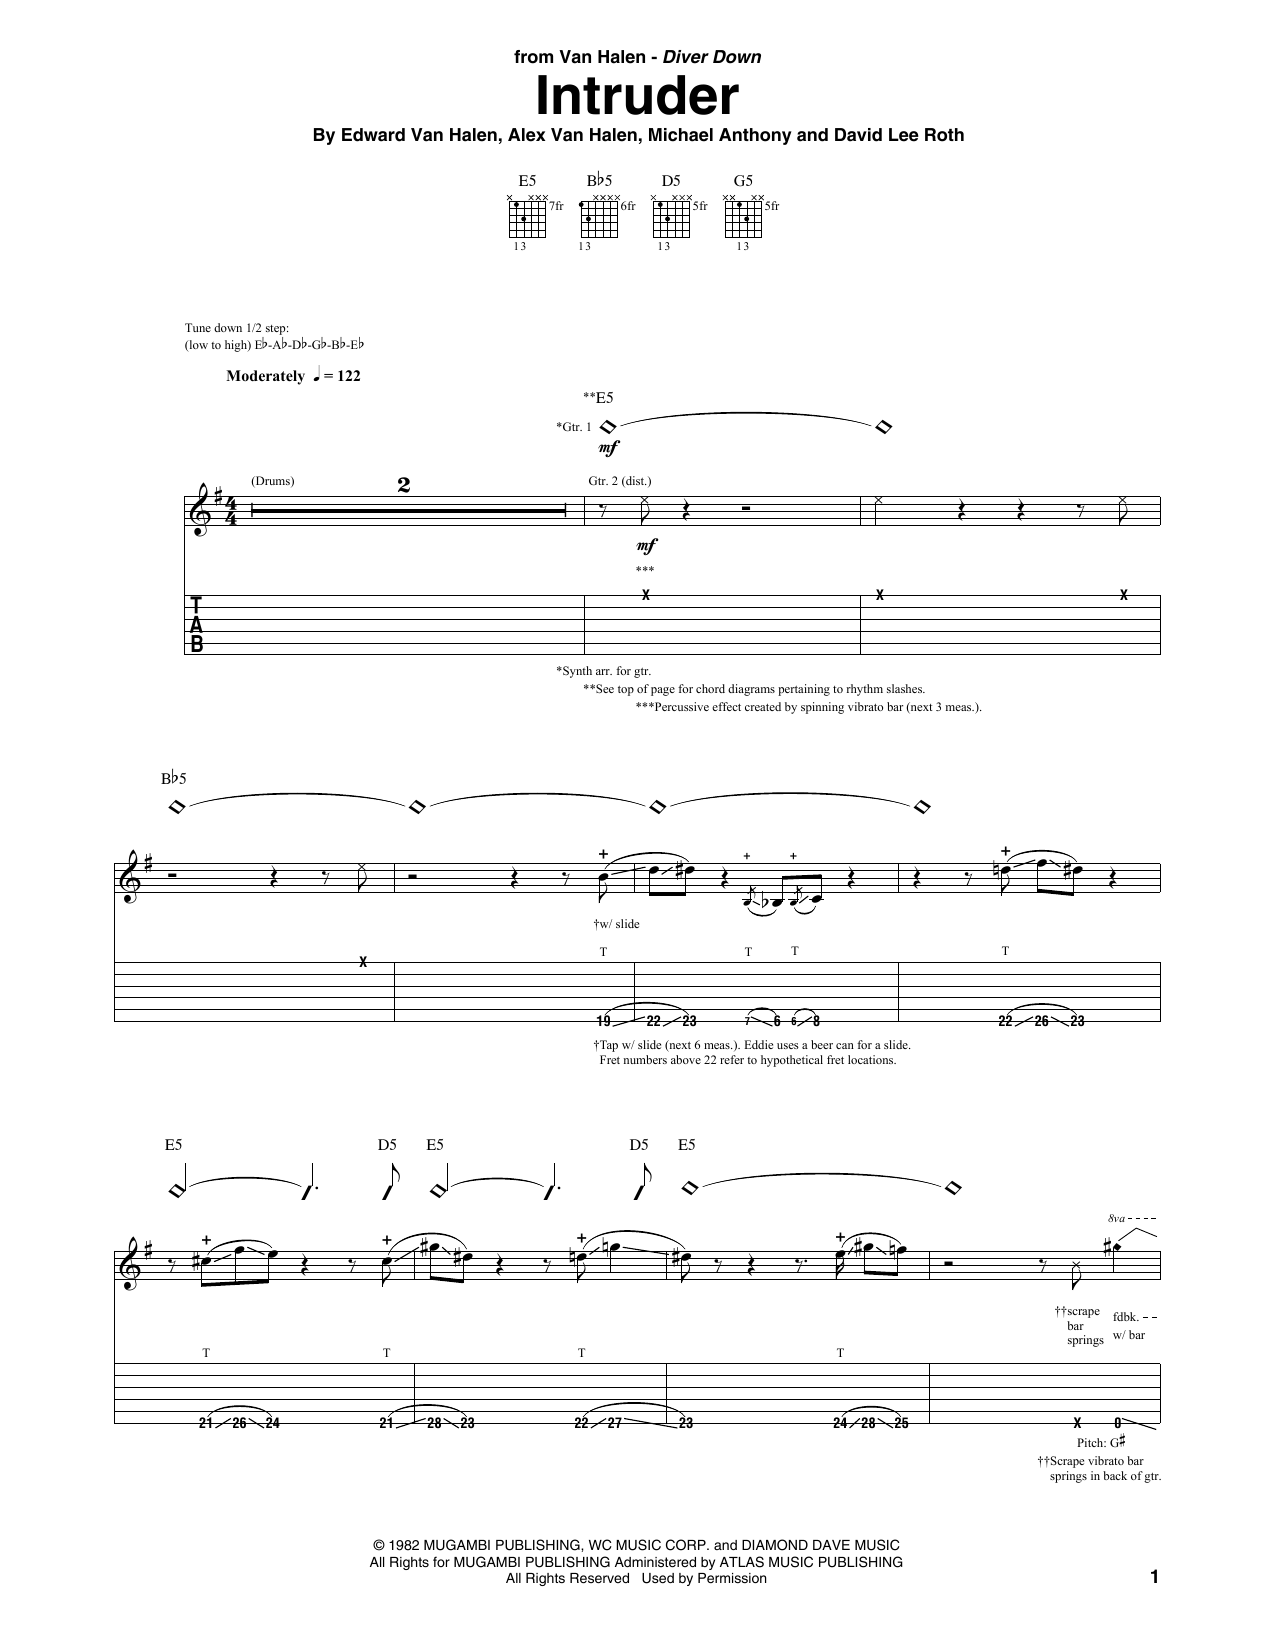 Van Halen Intruder Sheet Music Notes & Chords for Guitar Tab - Download or Print PDF